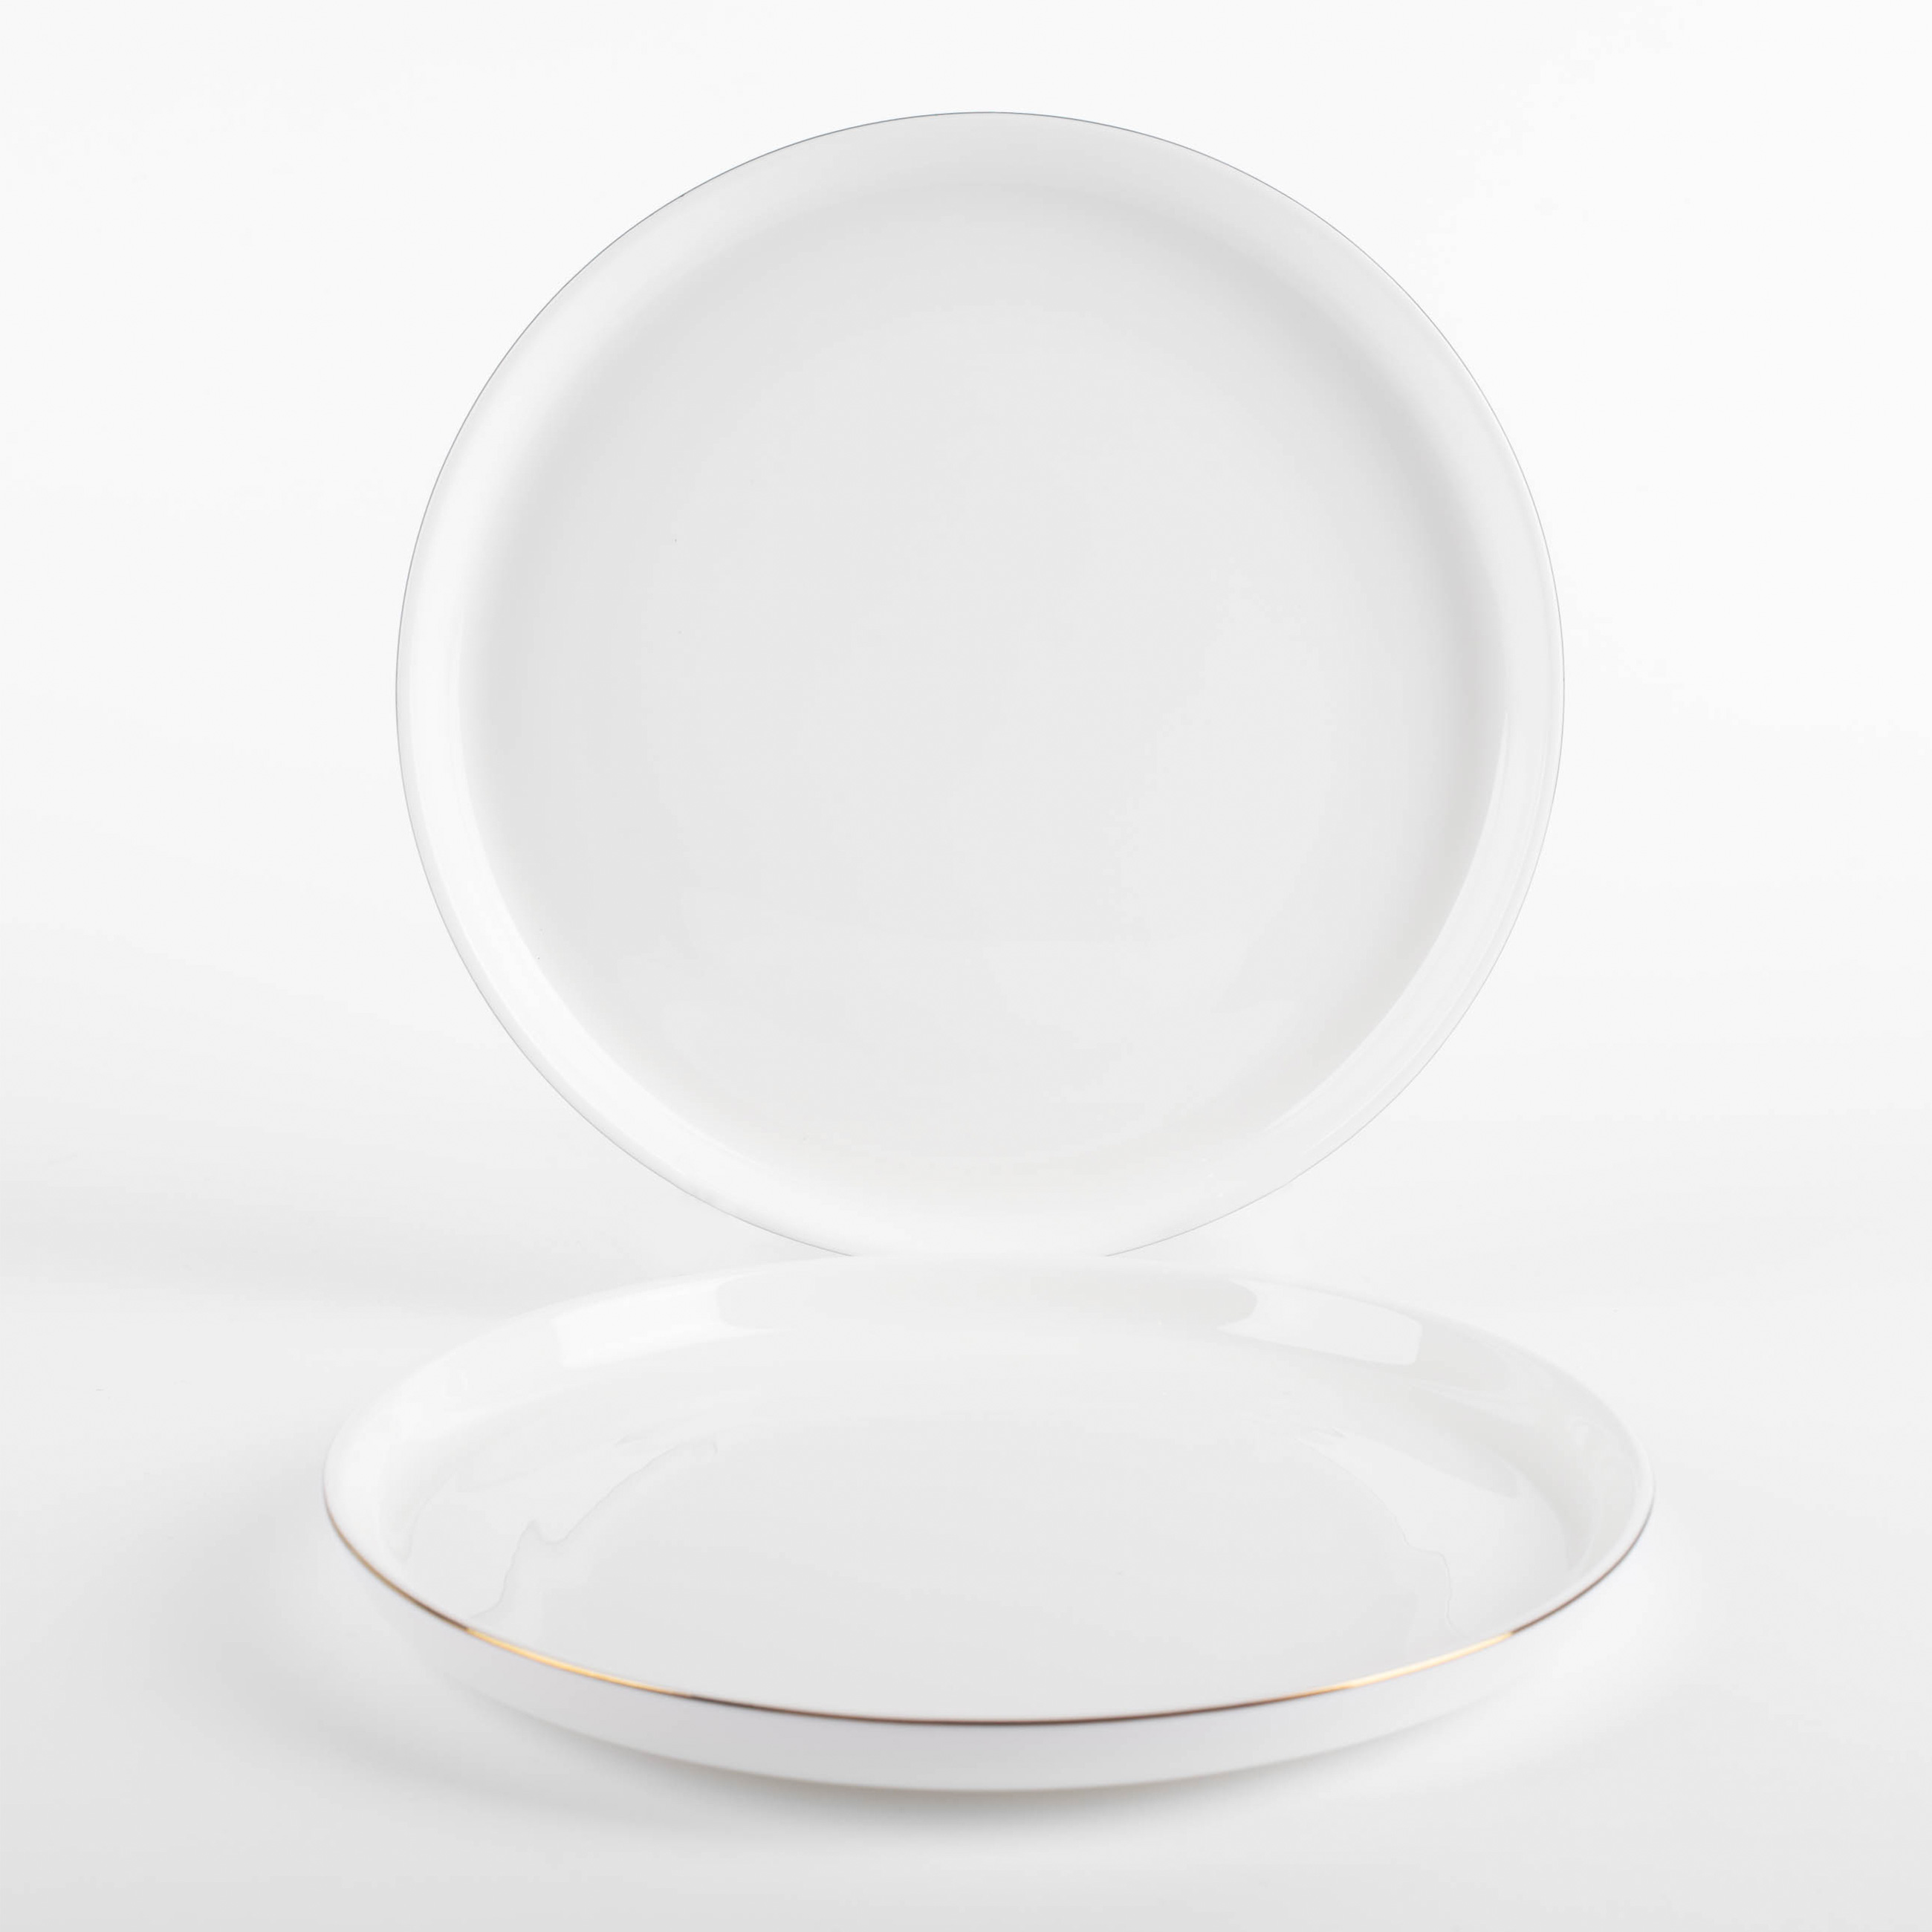 Dessert plate, 20 cm, 2 pieces, porcelain F, white, Ideal gold изображение № 6